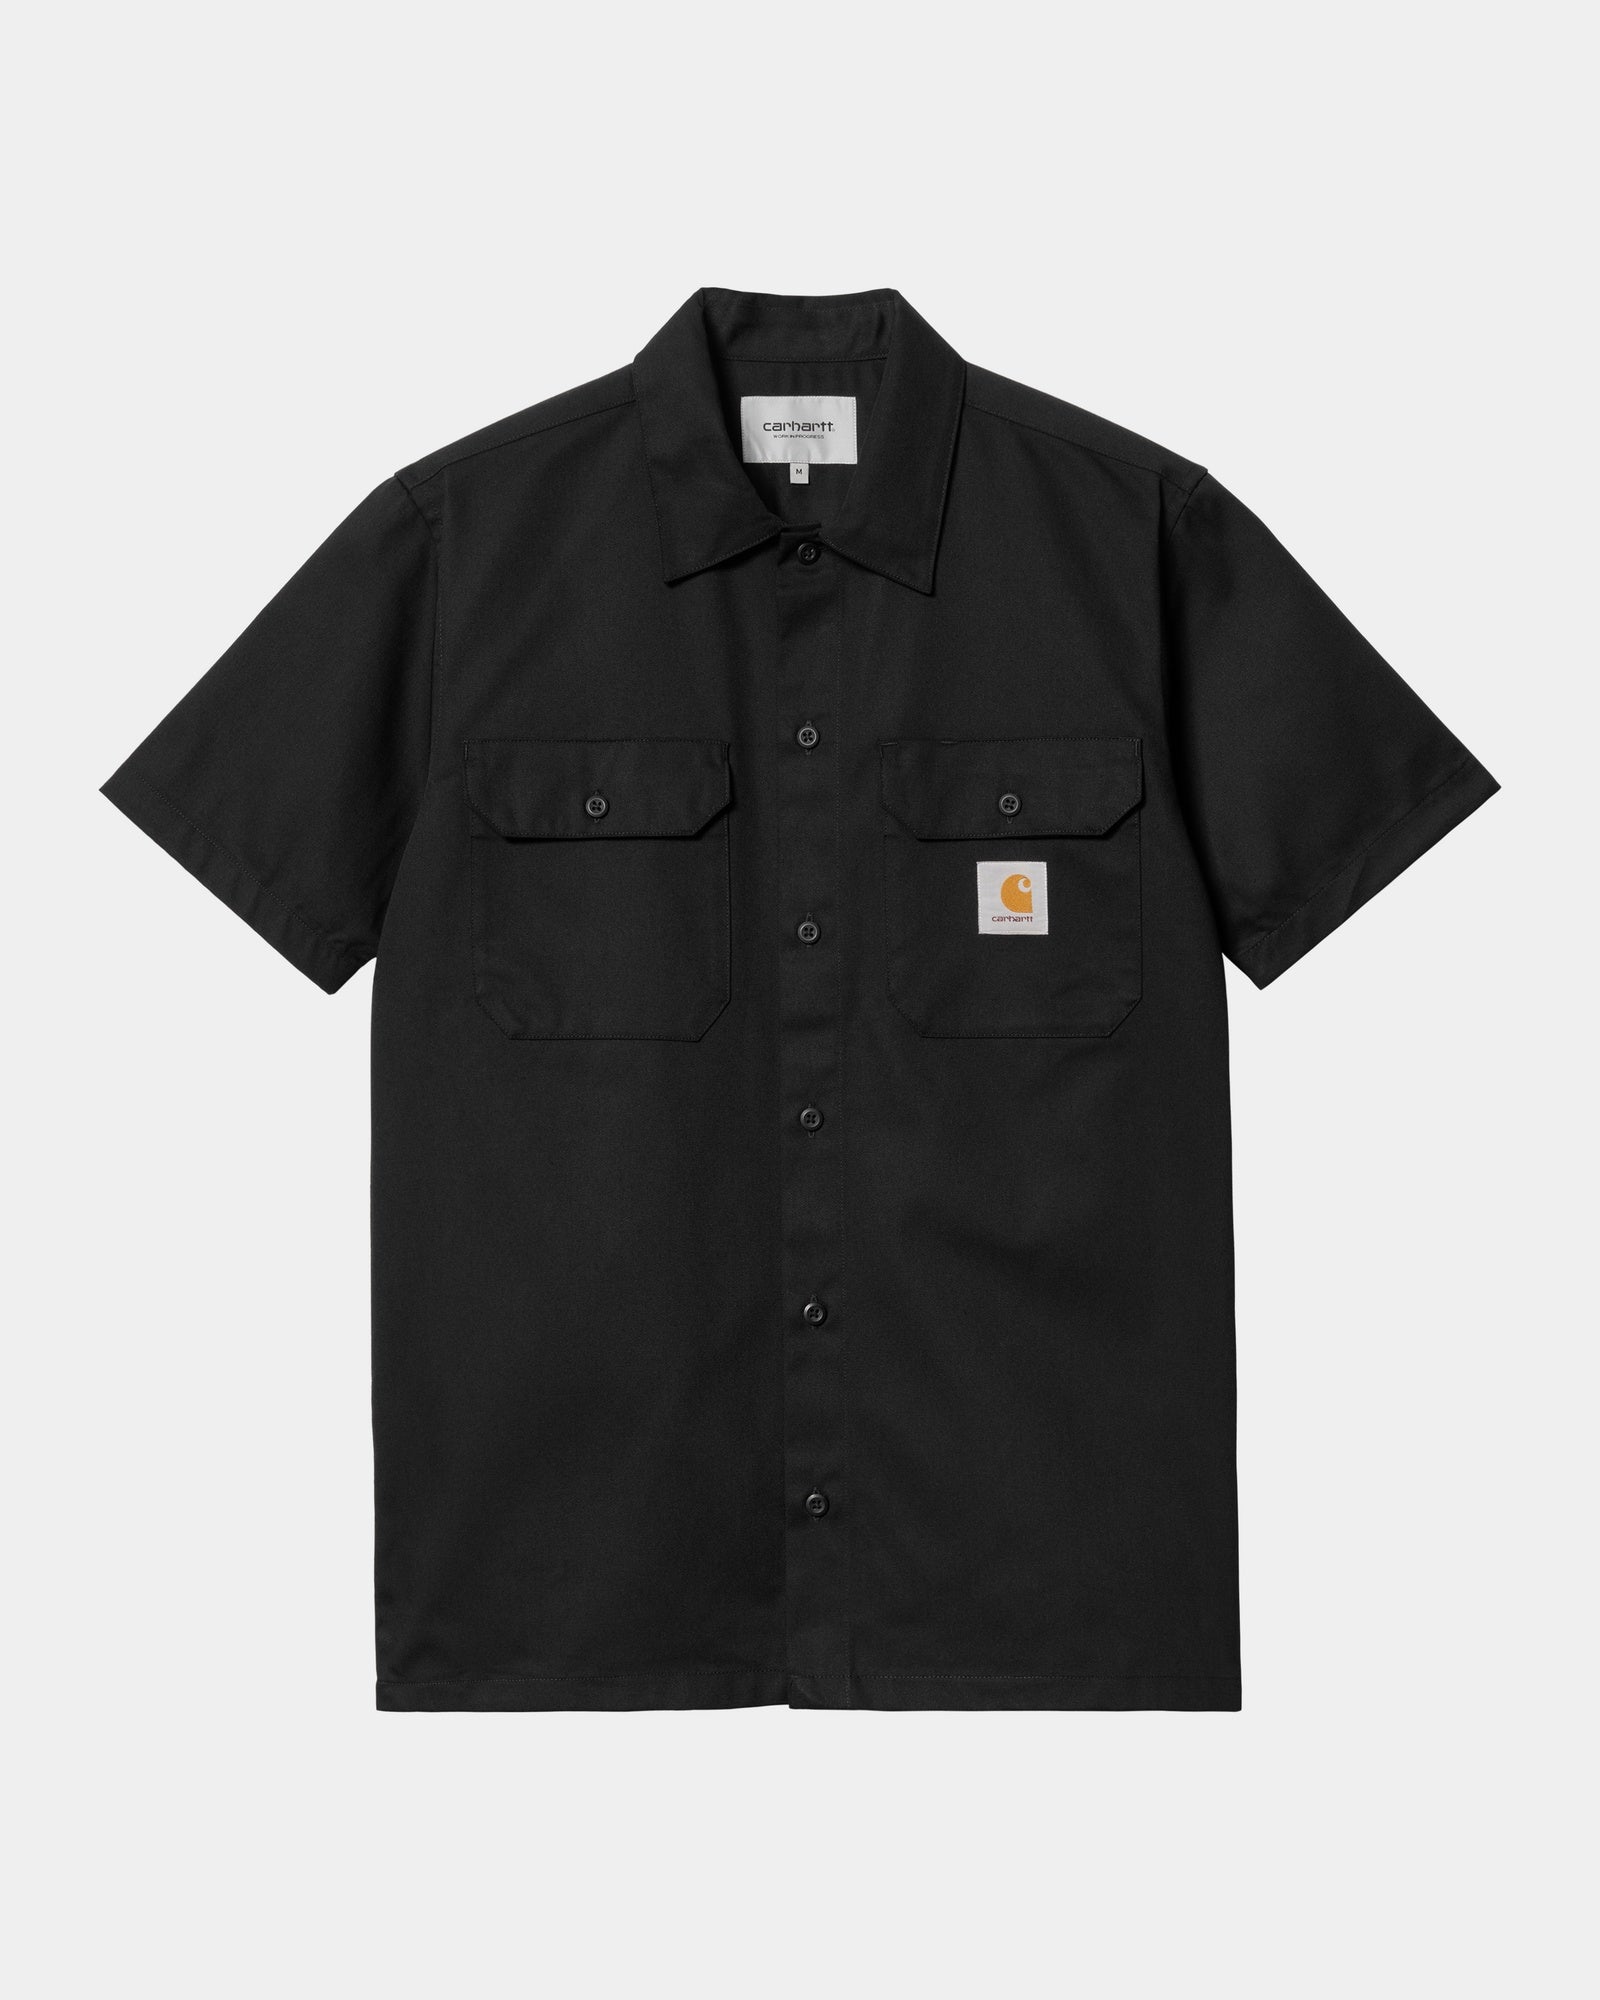 칼하트WIP Carhartt Master Short Sleeve Shirt,Black